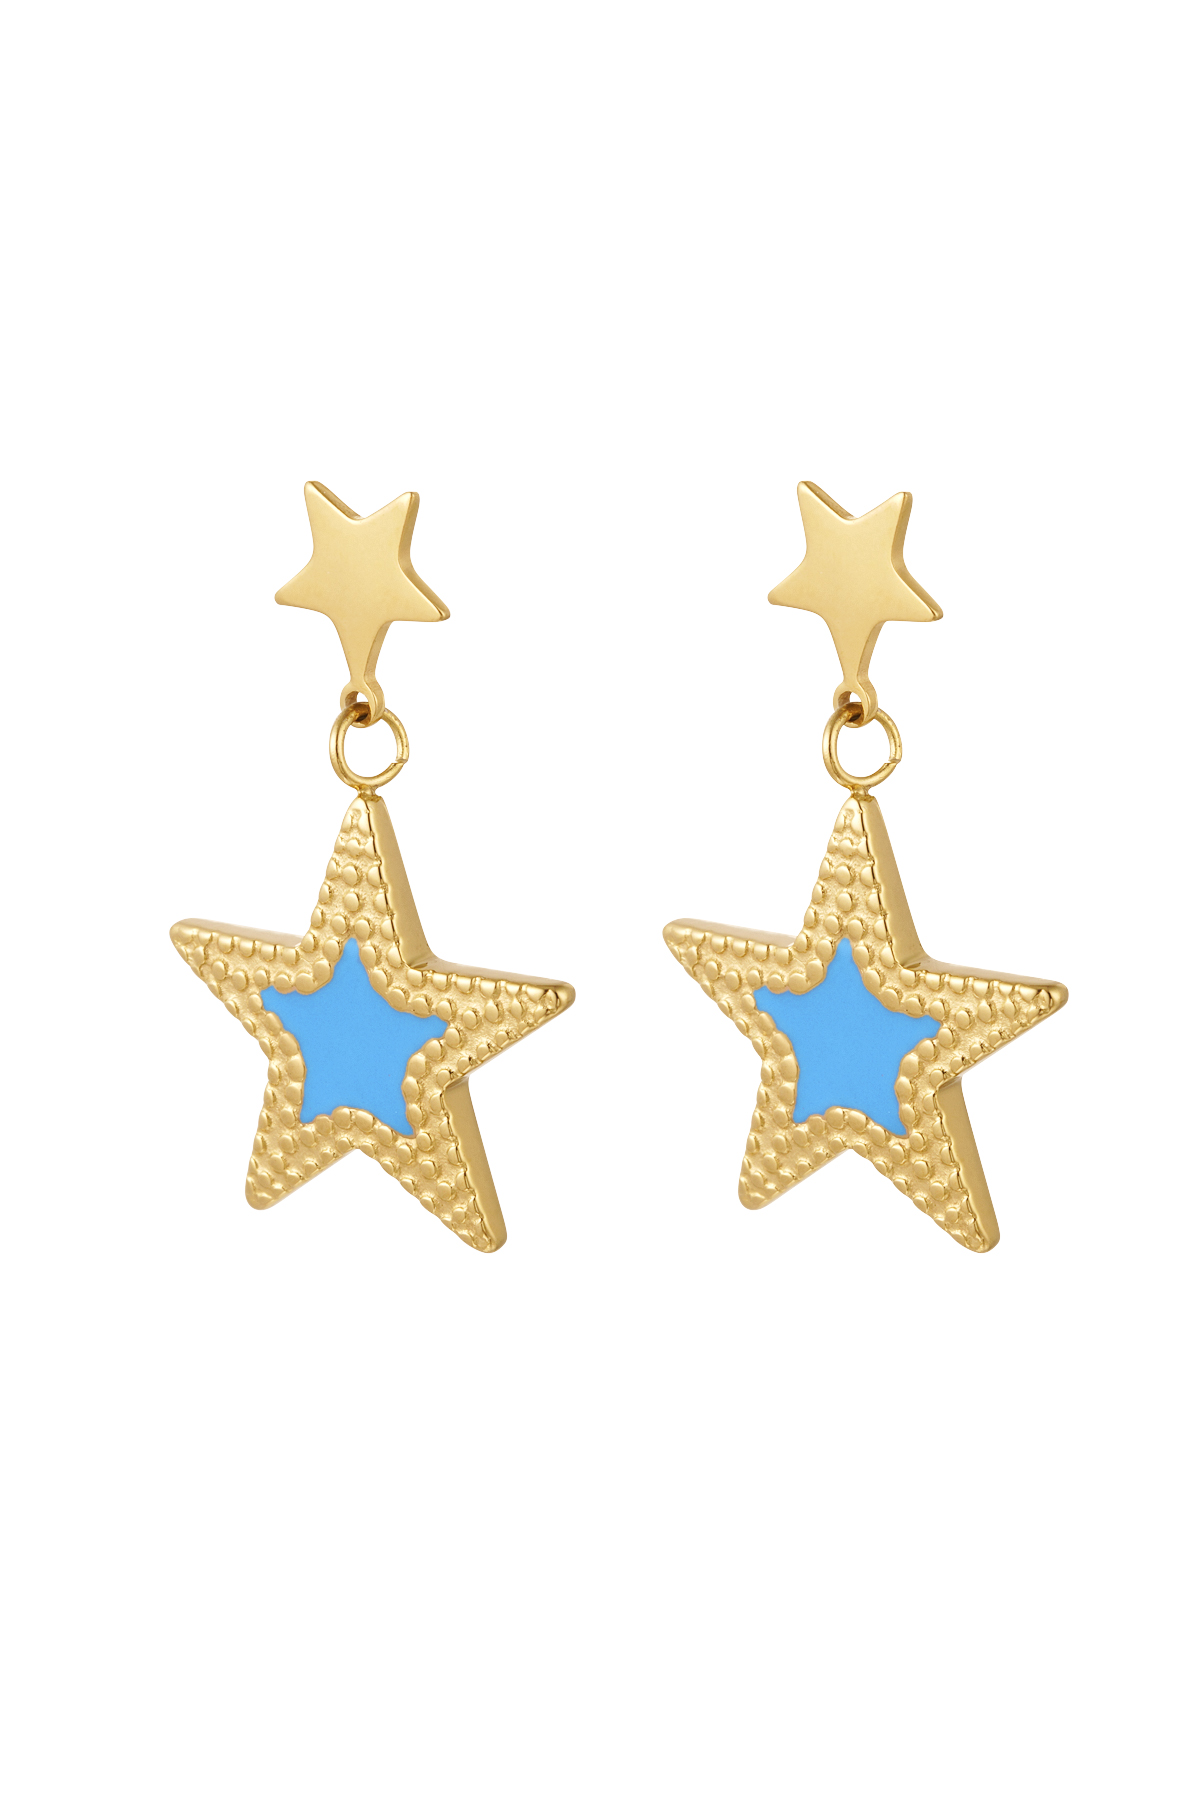 Pendientes estrella doble - oro/azul h5 